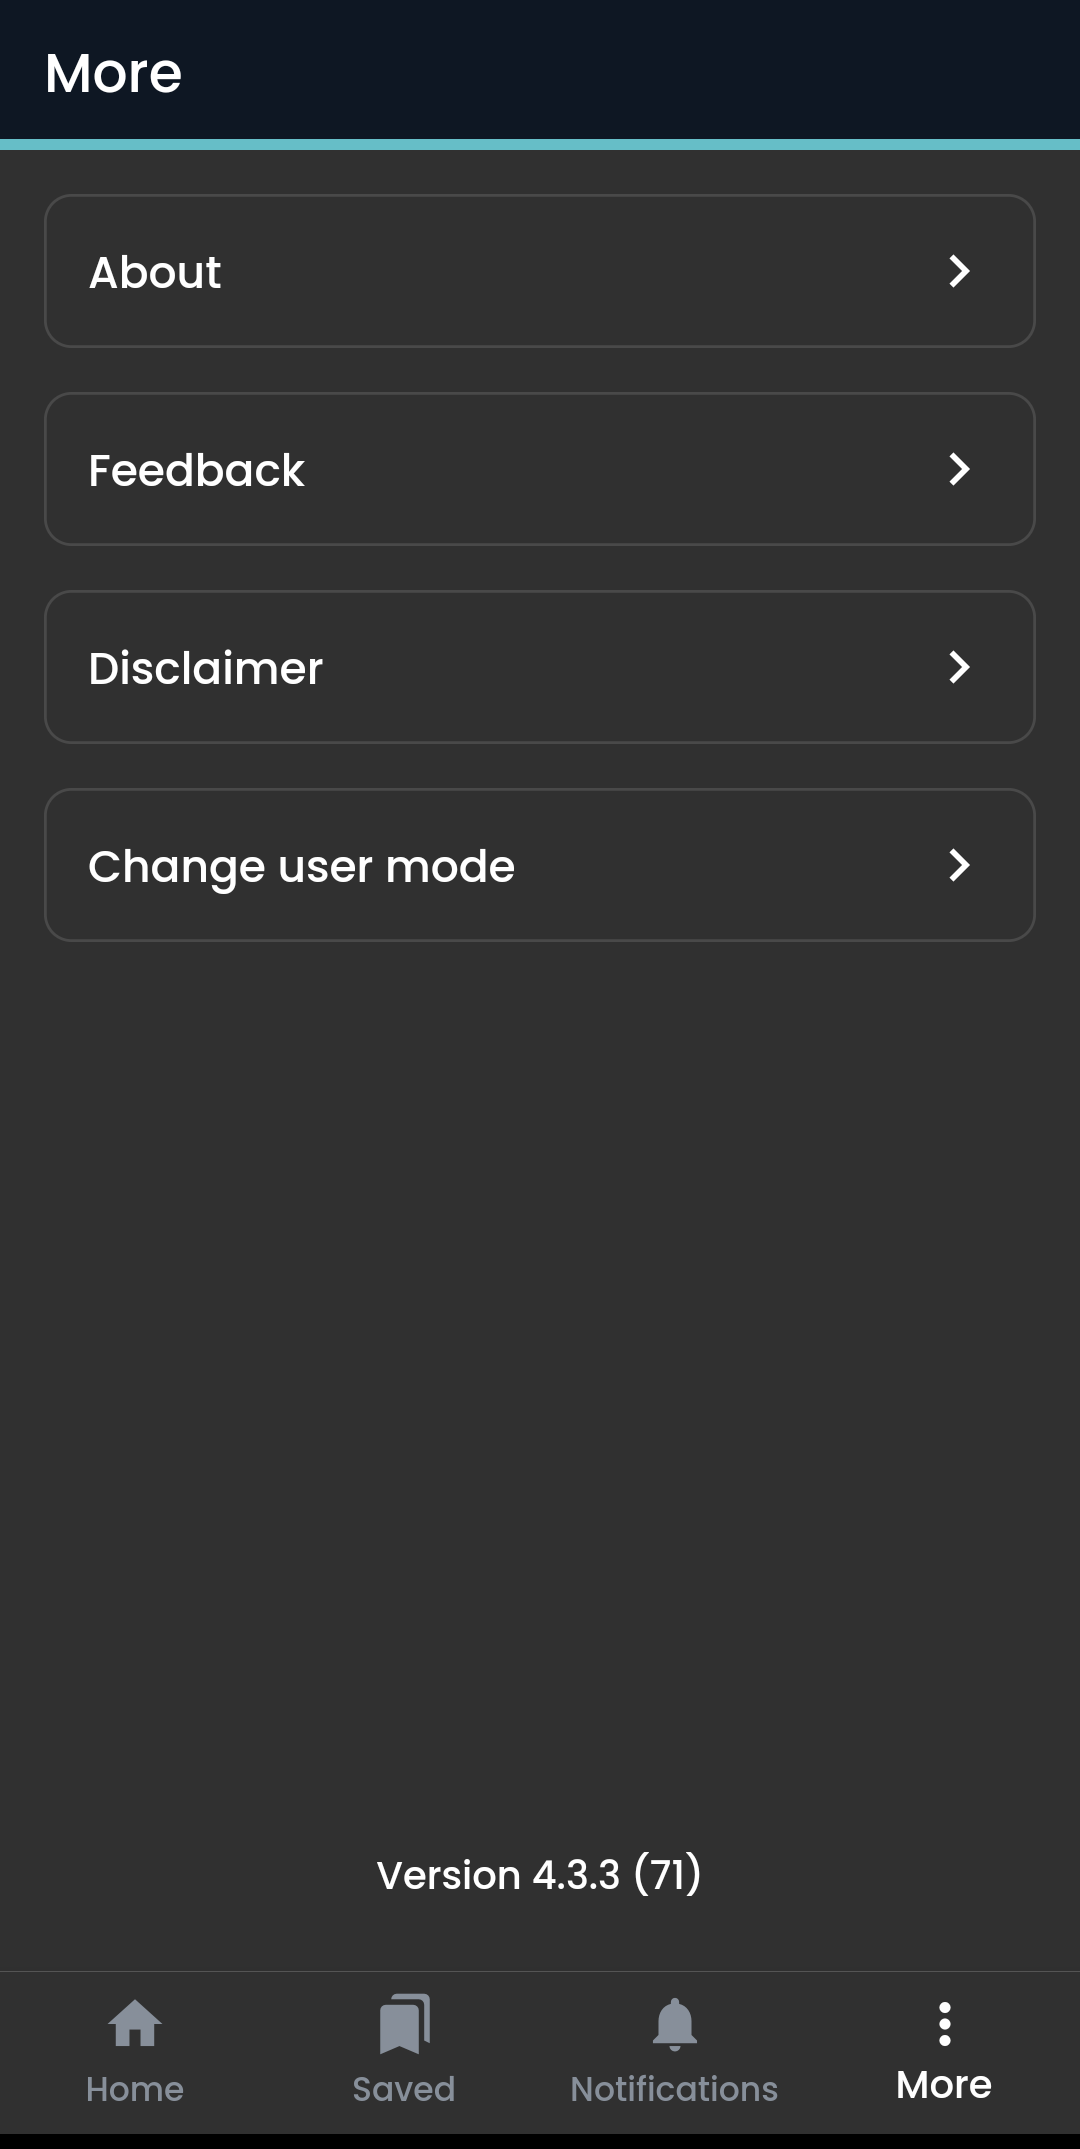 Screenshot of 'More' menu in RDS app.